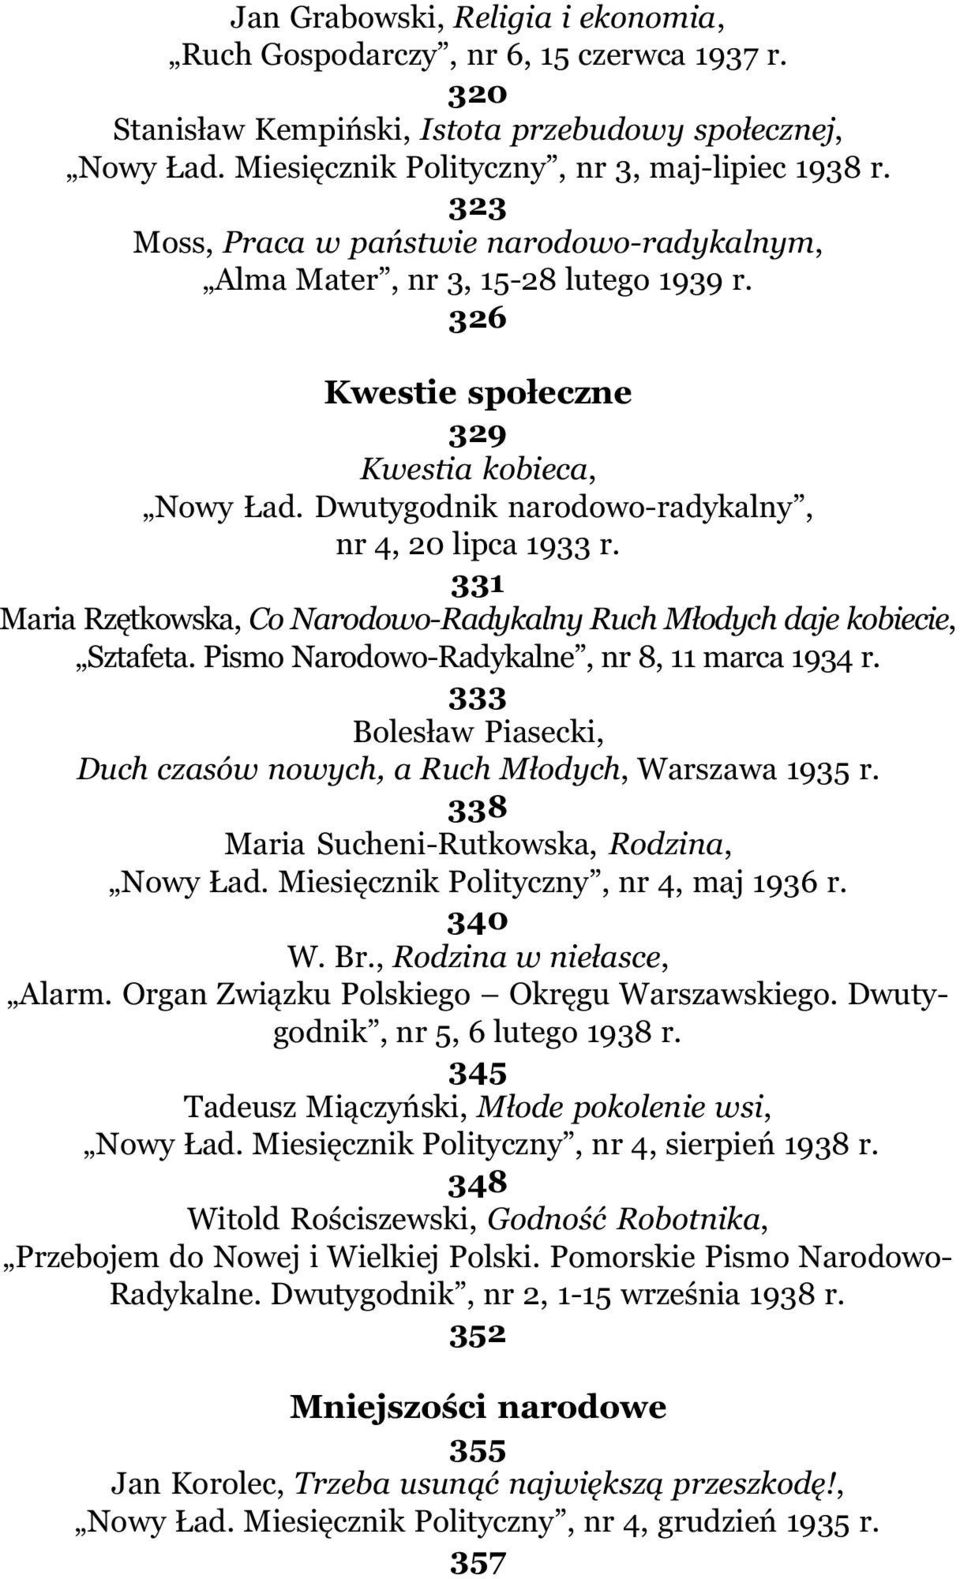 331 Maria Rzêtkowska, Co Narodowo-Radykalny Ruch M³odych daje kobiecie, Sztafeta. Pismo Narodowo-Radykalne, nr 8, 11 marca 1934 r.